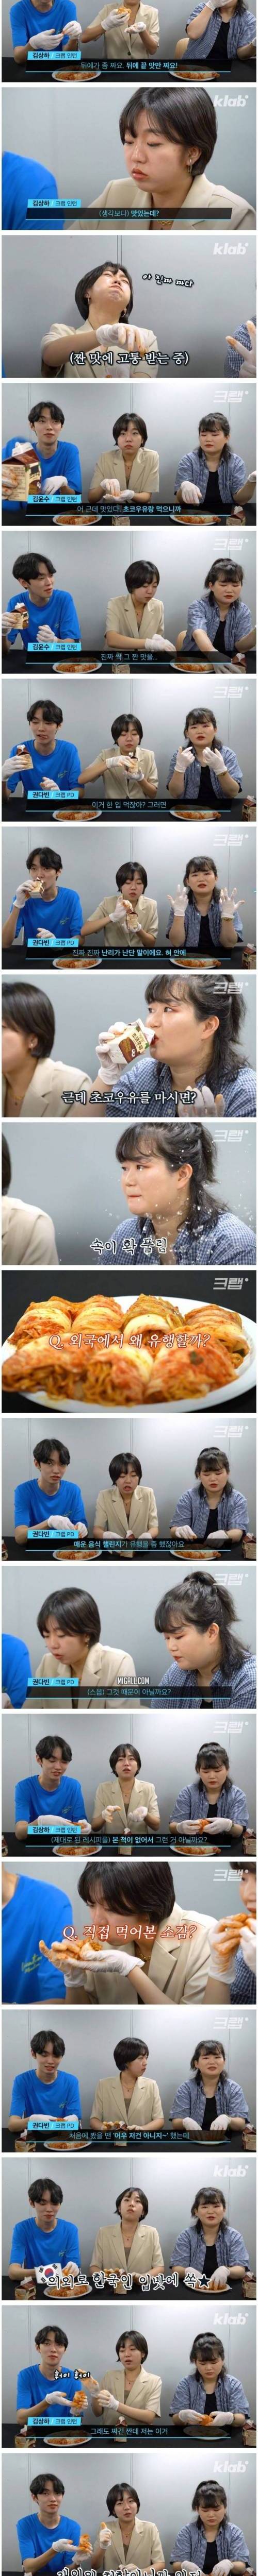 [스압] 논란의 김치말이 국수 직접 먹어본 후기.jpg